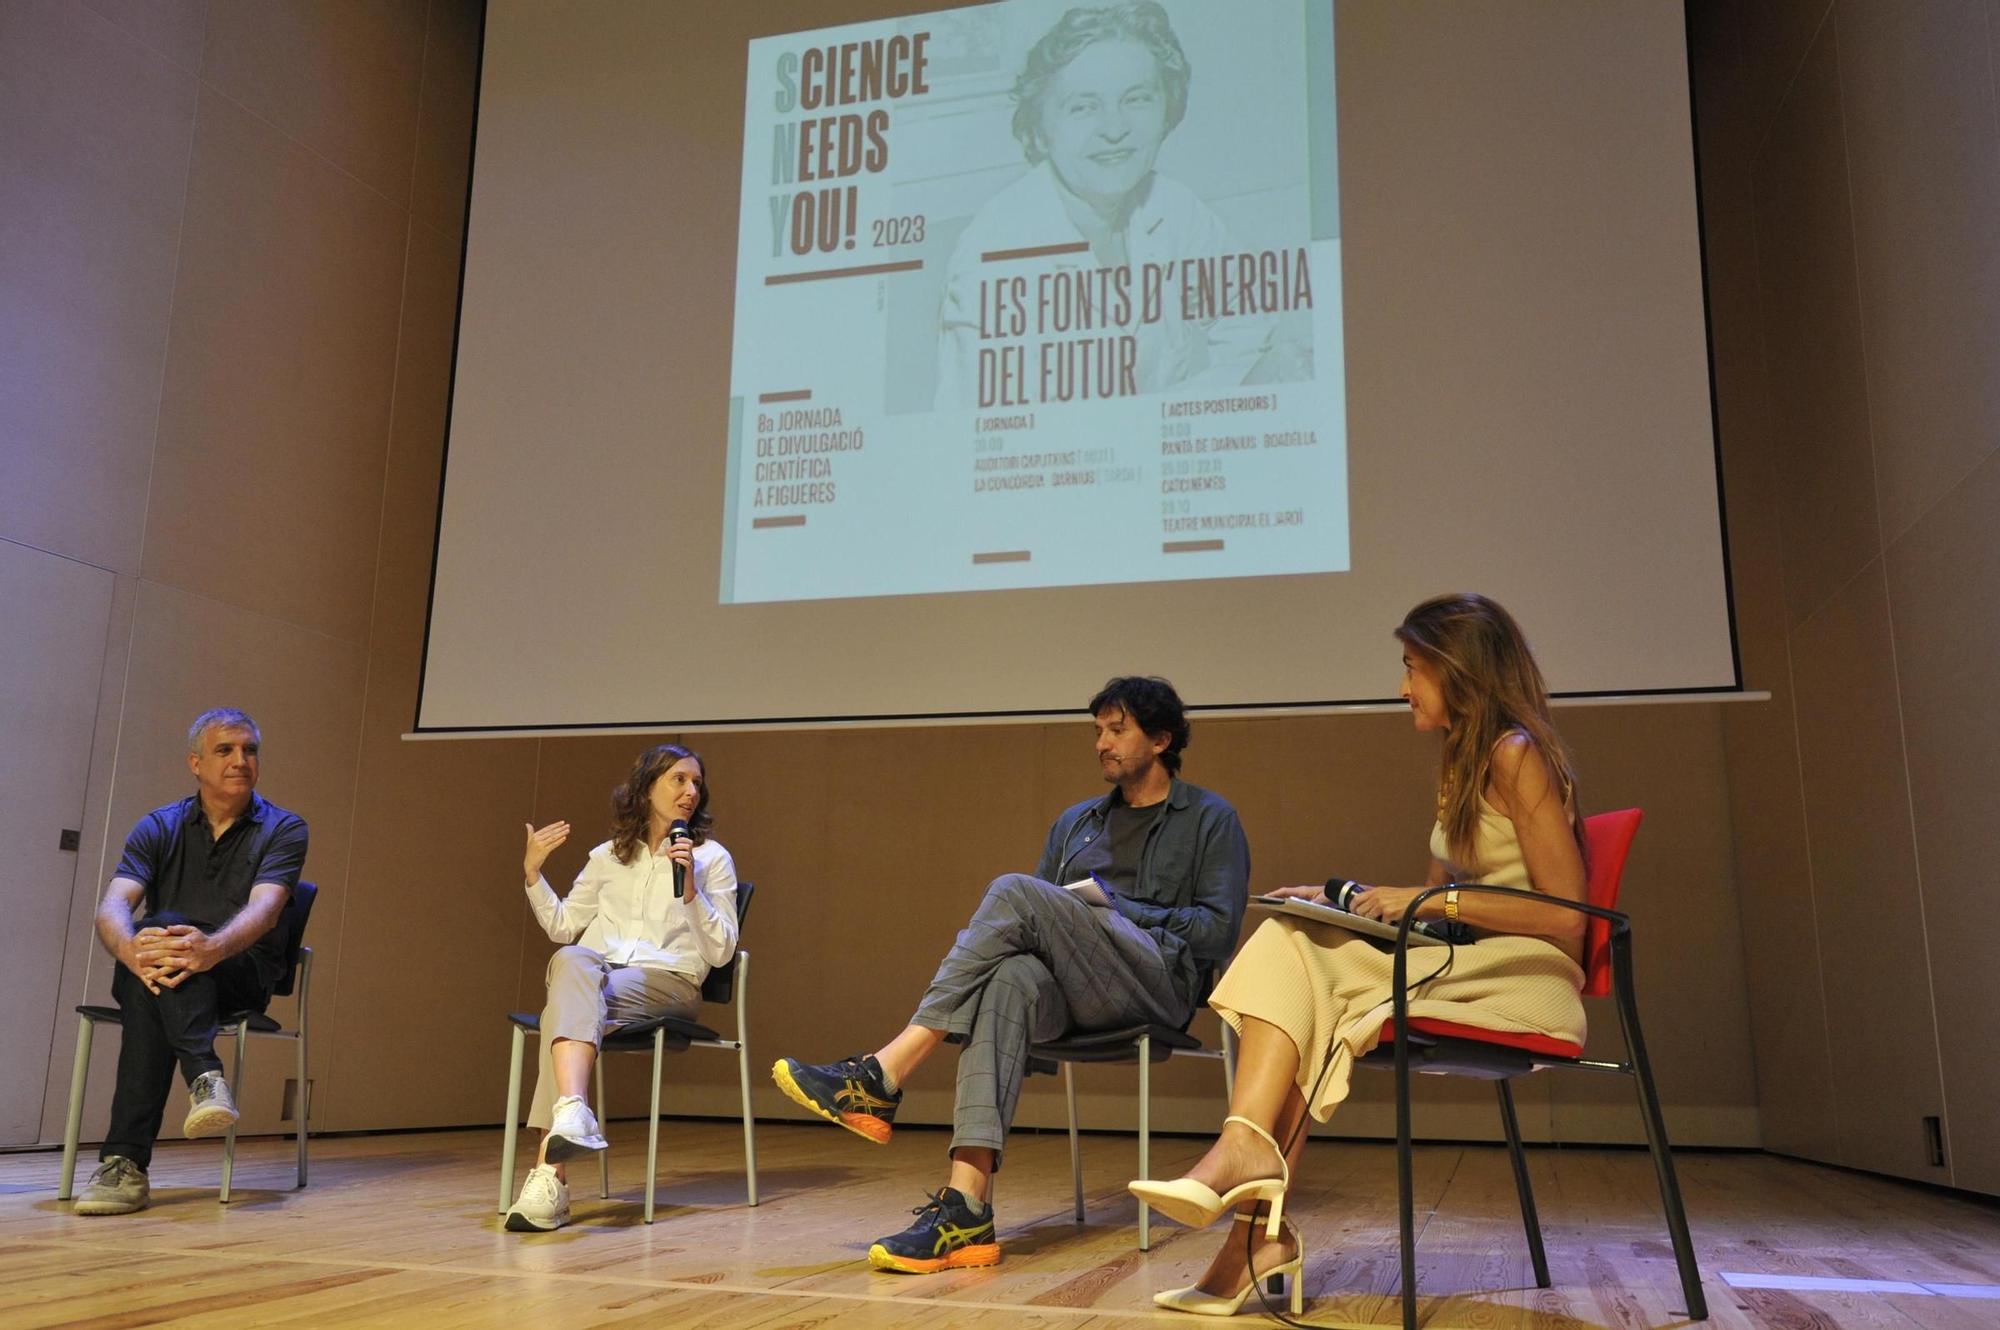 FOTOS: Science Needs You! aplega 300 persones en xerrades i visites guiades a Figueres i Darnius